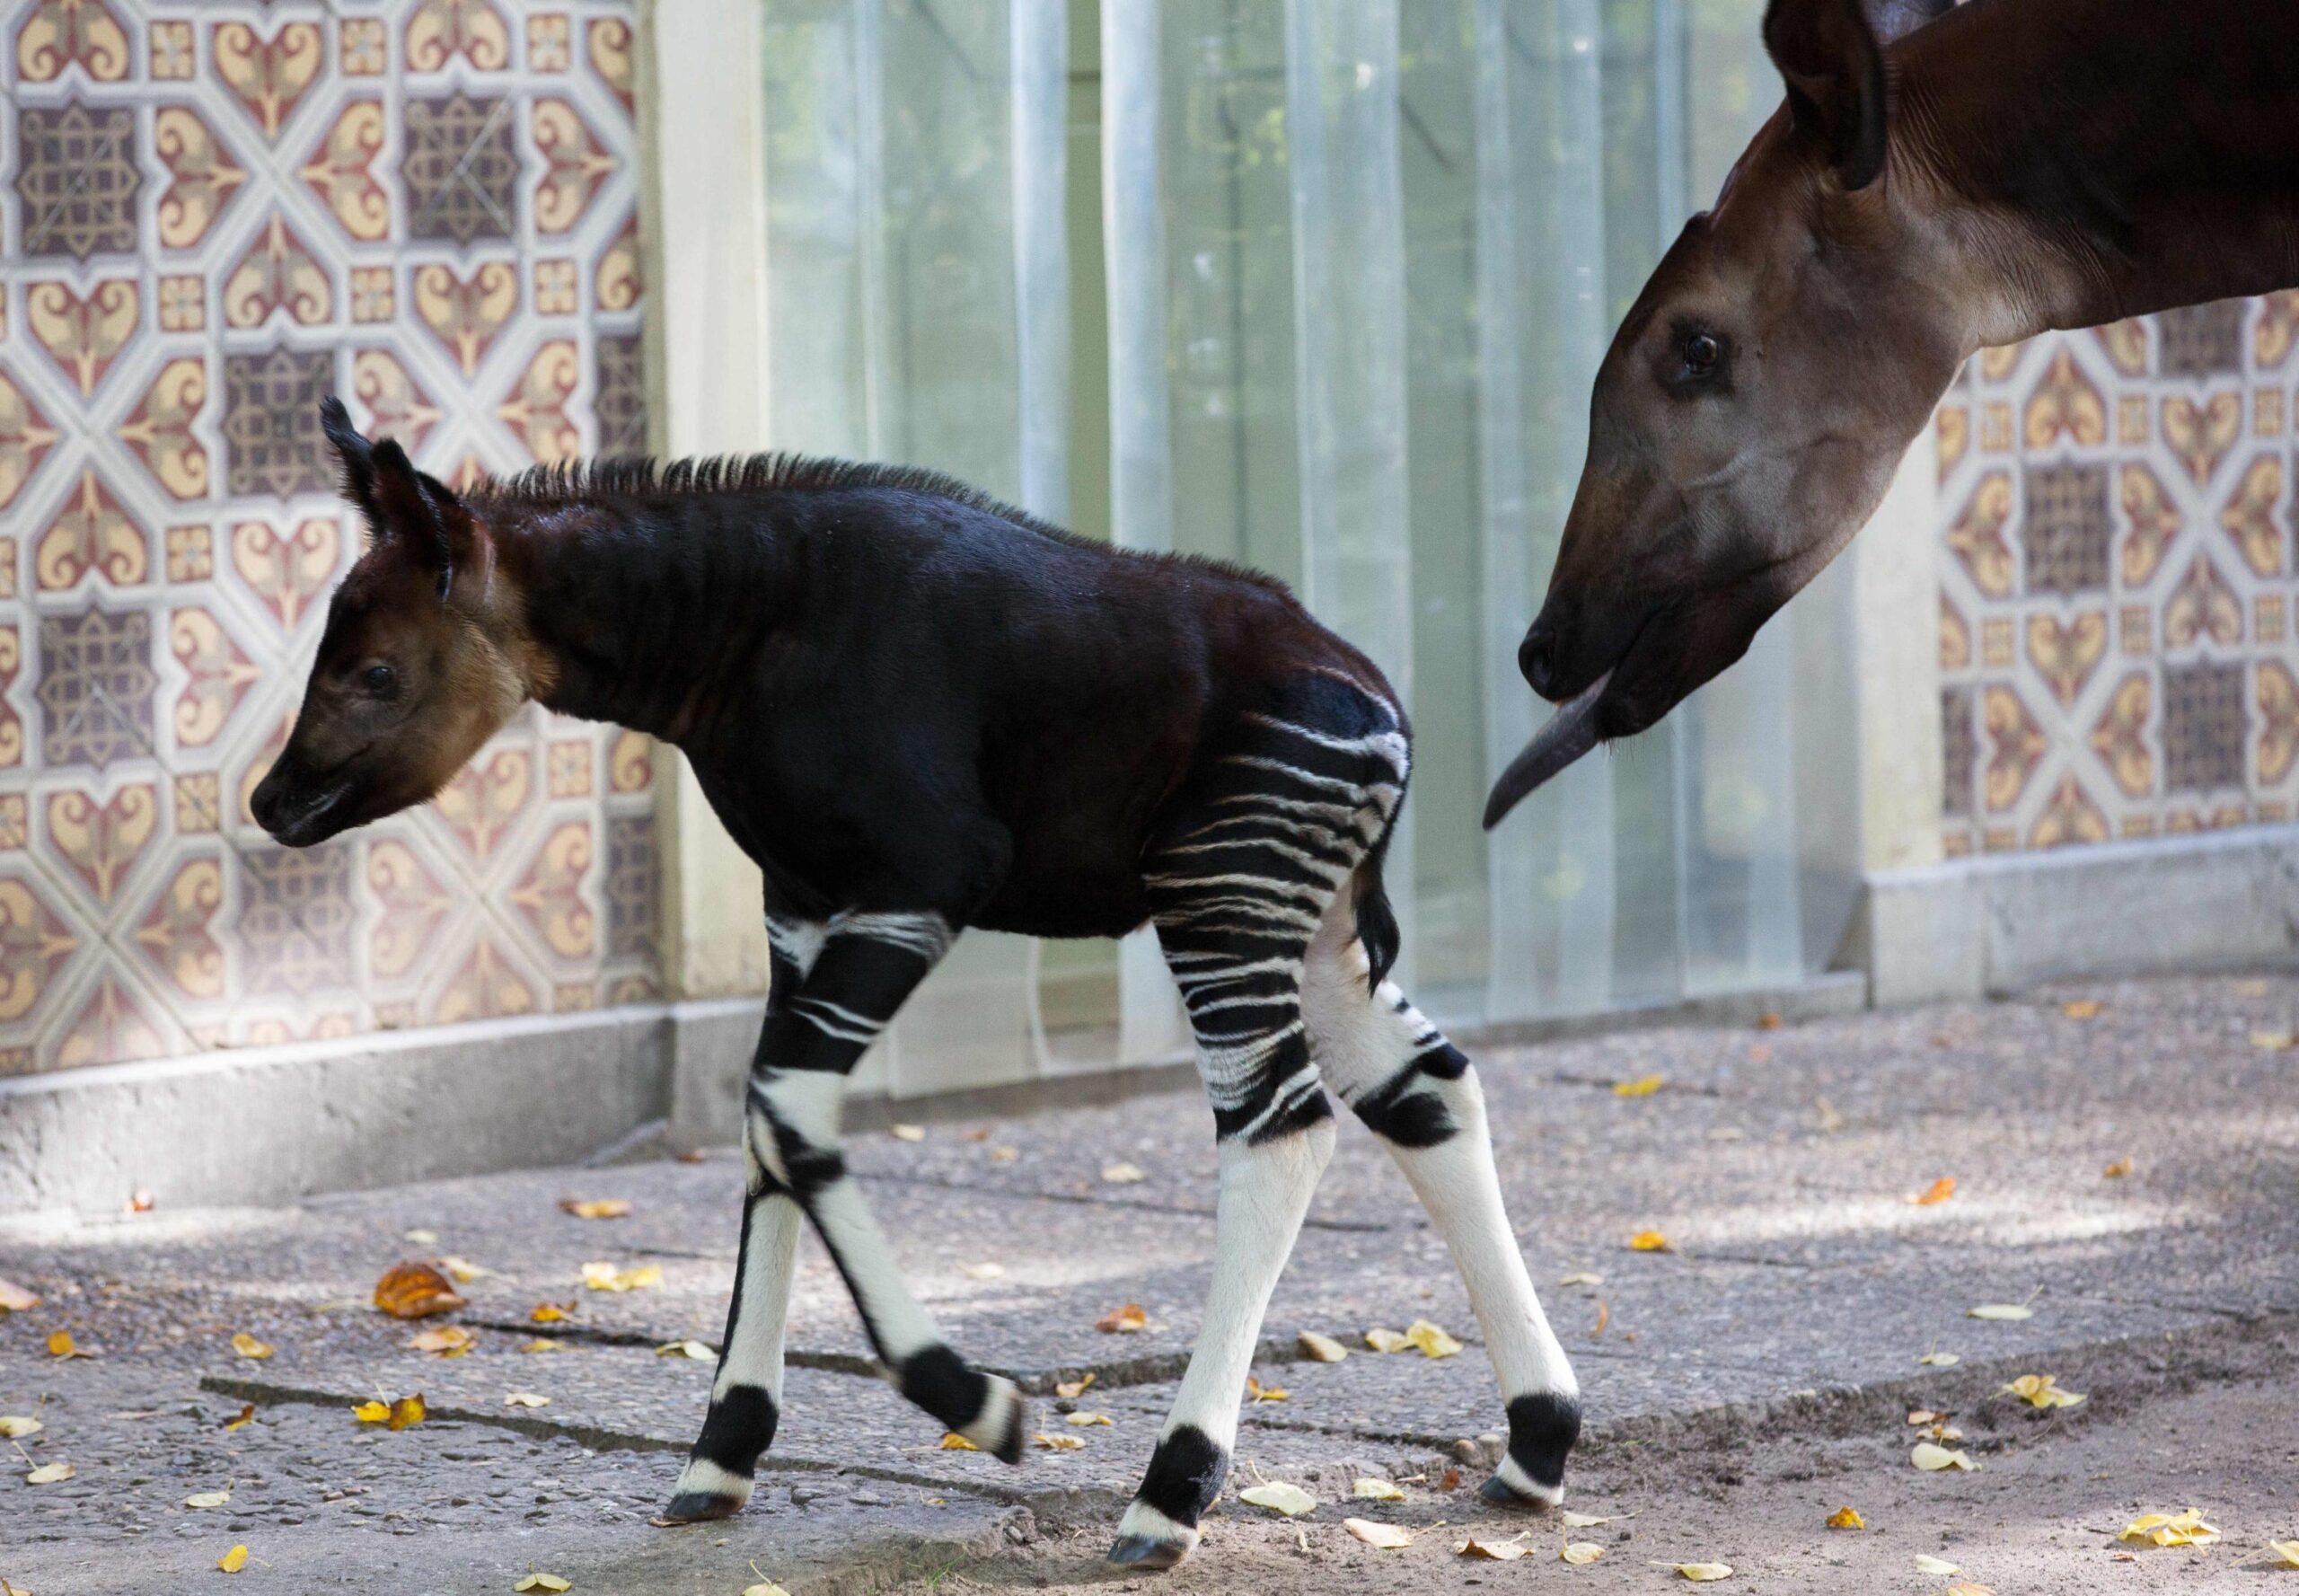 Okapi calf Nkosi in the Antwerp Zoo05